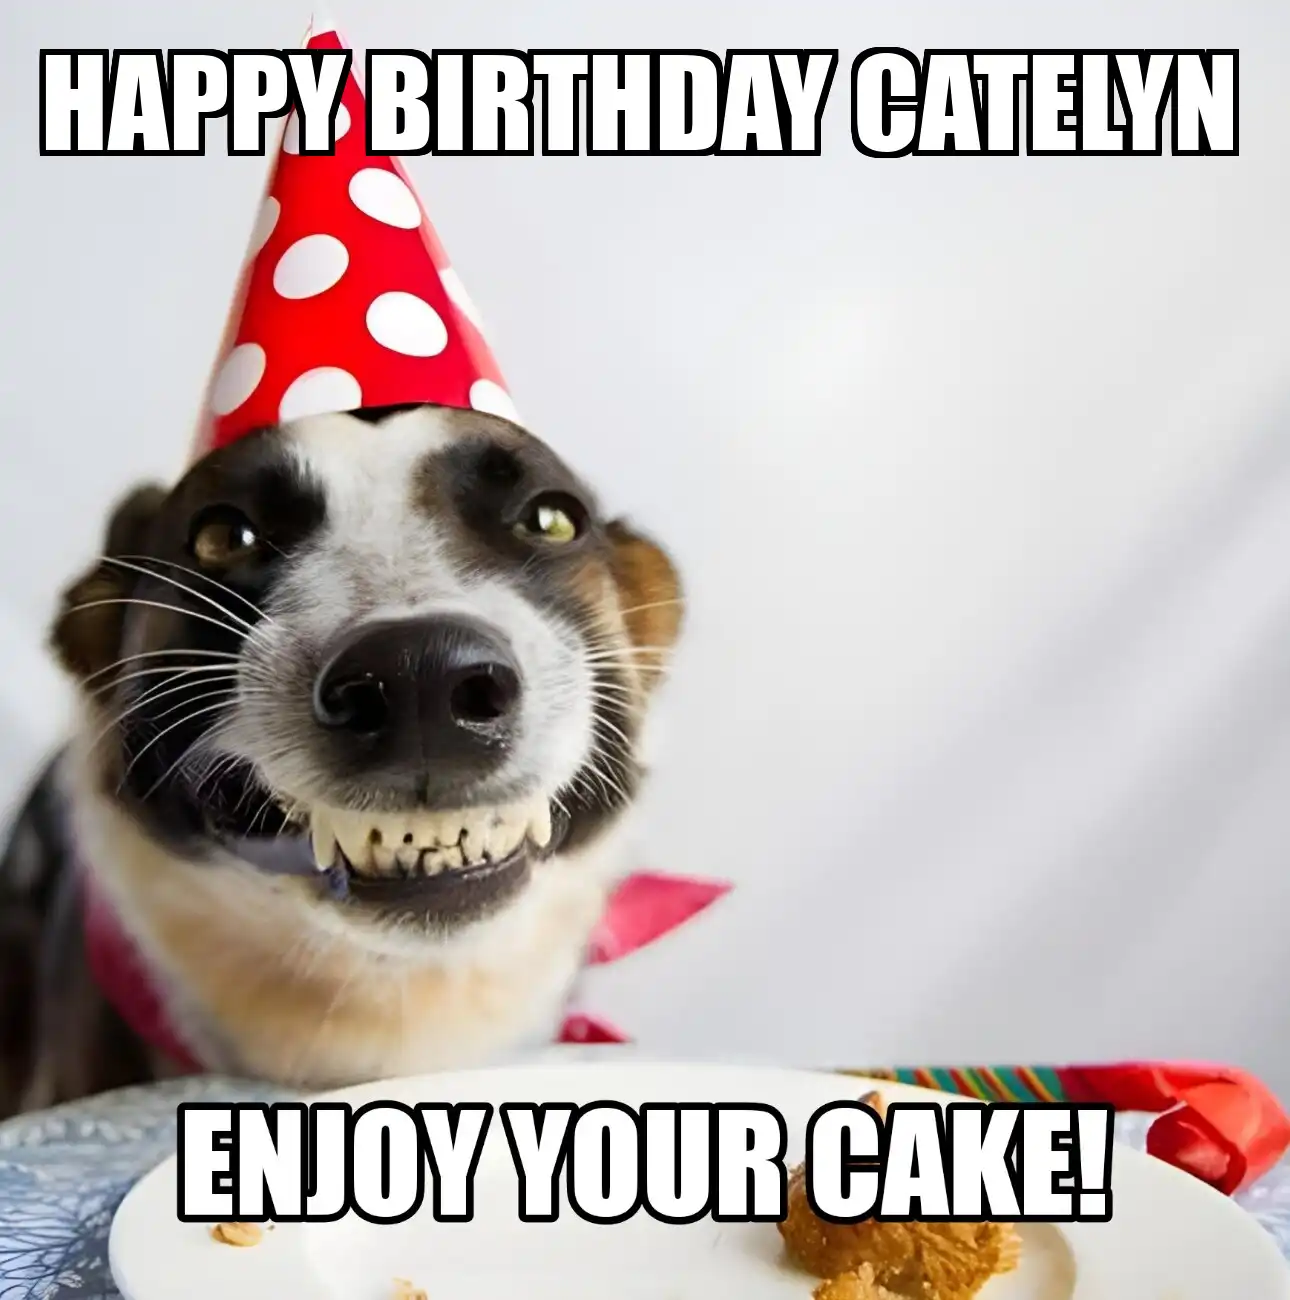 Happy Birthday Catelyn Enjoy Your Cake Dog Meme